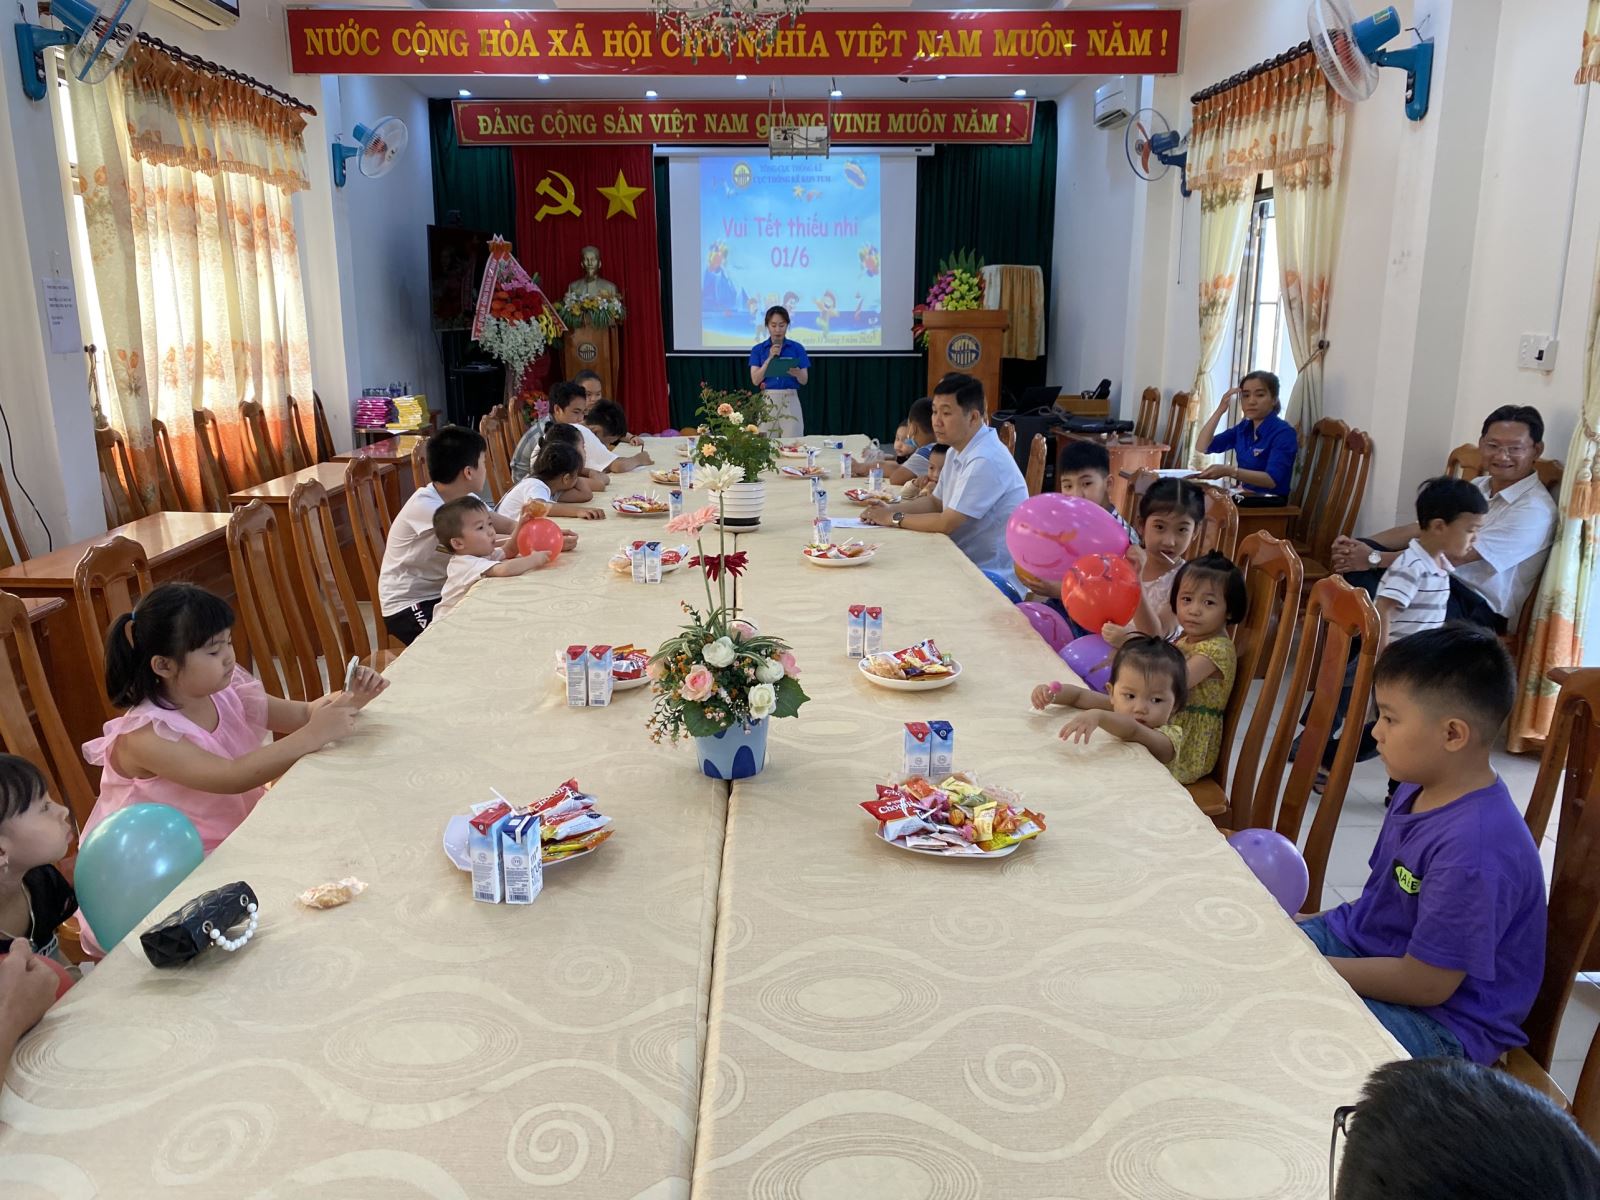 Cục Thống kê tỉnh Kon Tum tổ chức chương trình “Vui tết thiếu nhi 1/6”